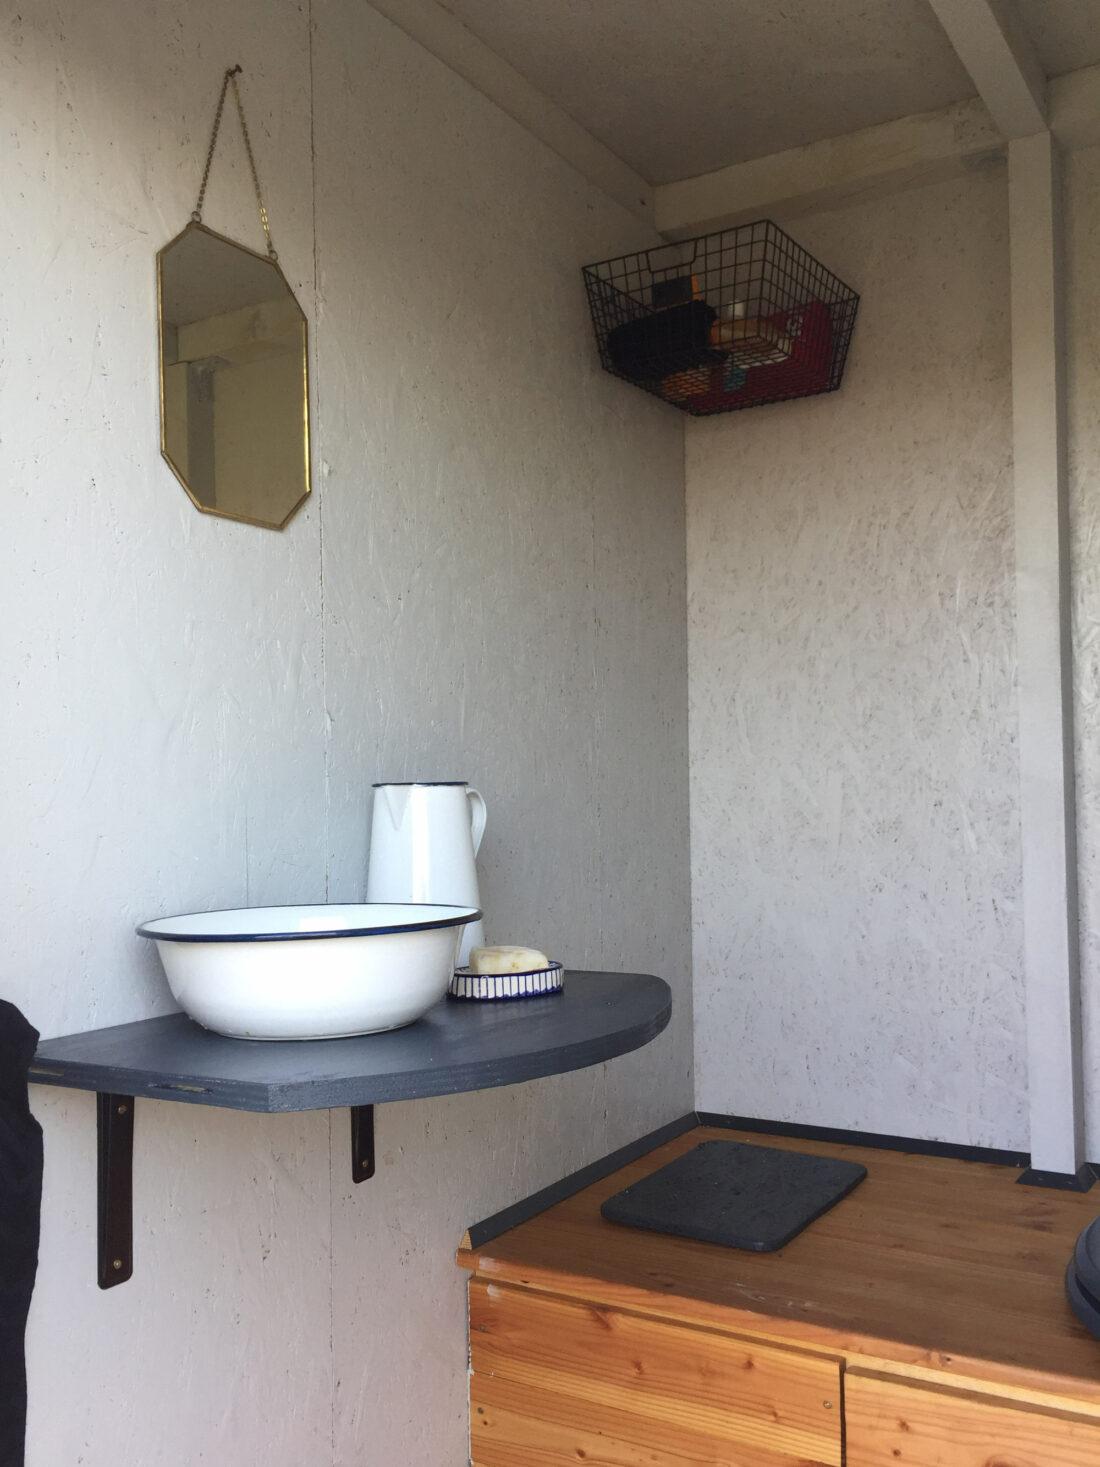 Einrichtung eines Toilettenraums in einer Gartenhütte.